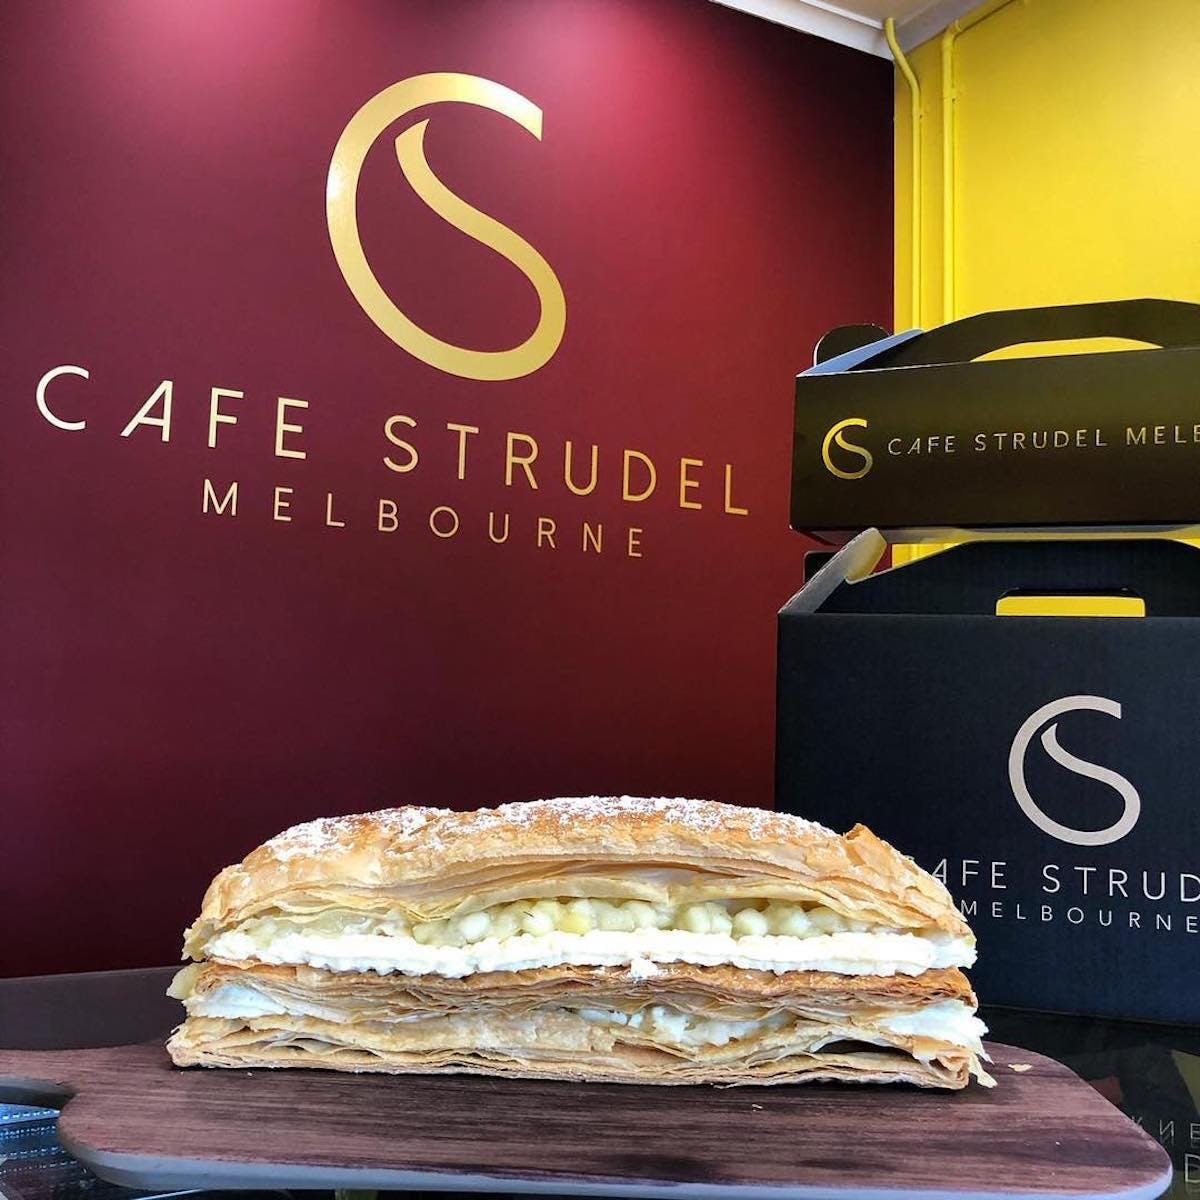 Cafe Strudel Melbourne - Pubs Sydney